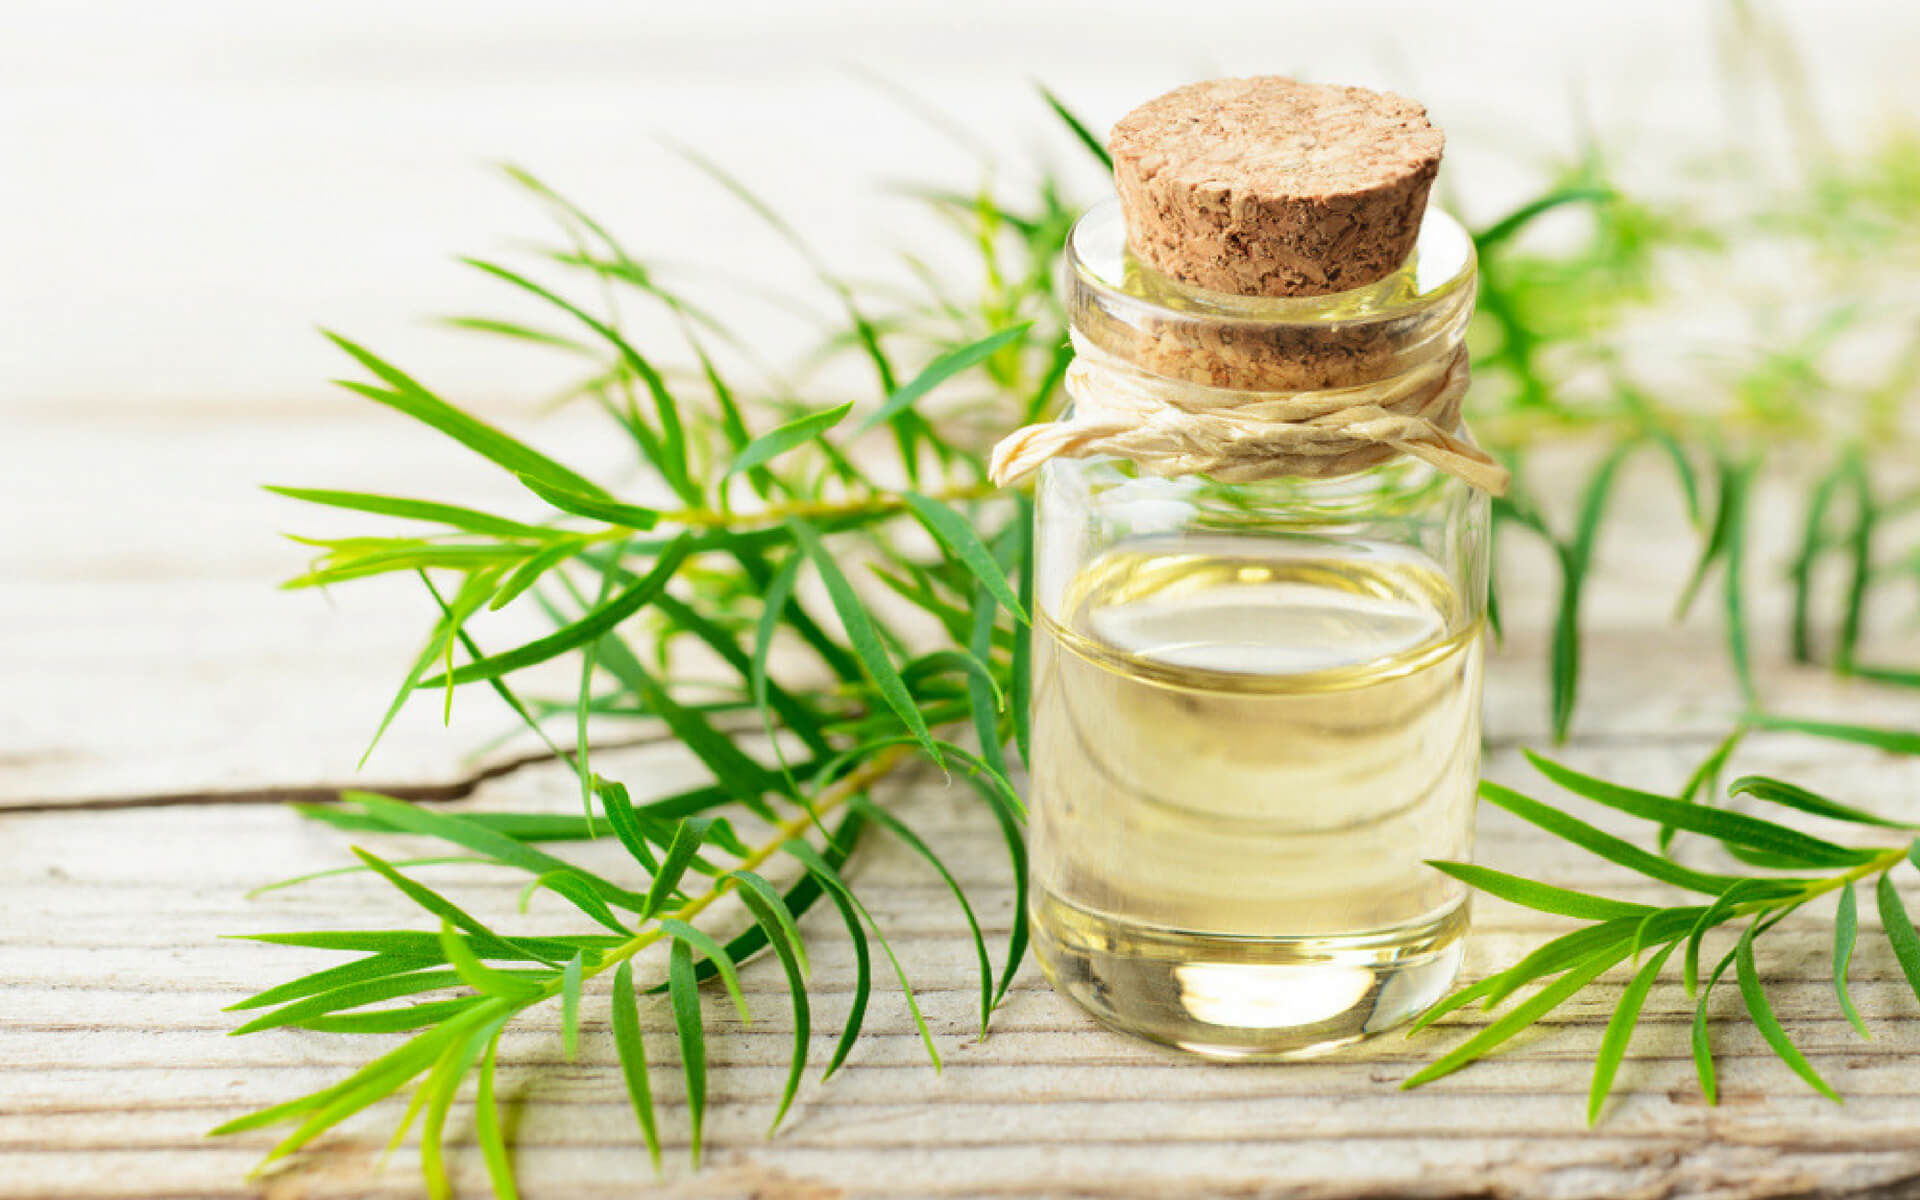 Il Tea Tree oil è un ottimo repellente naturale utili per combattere le cimici